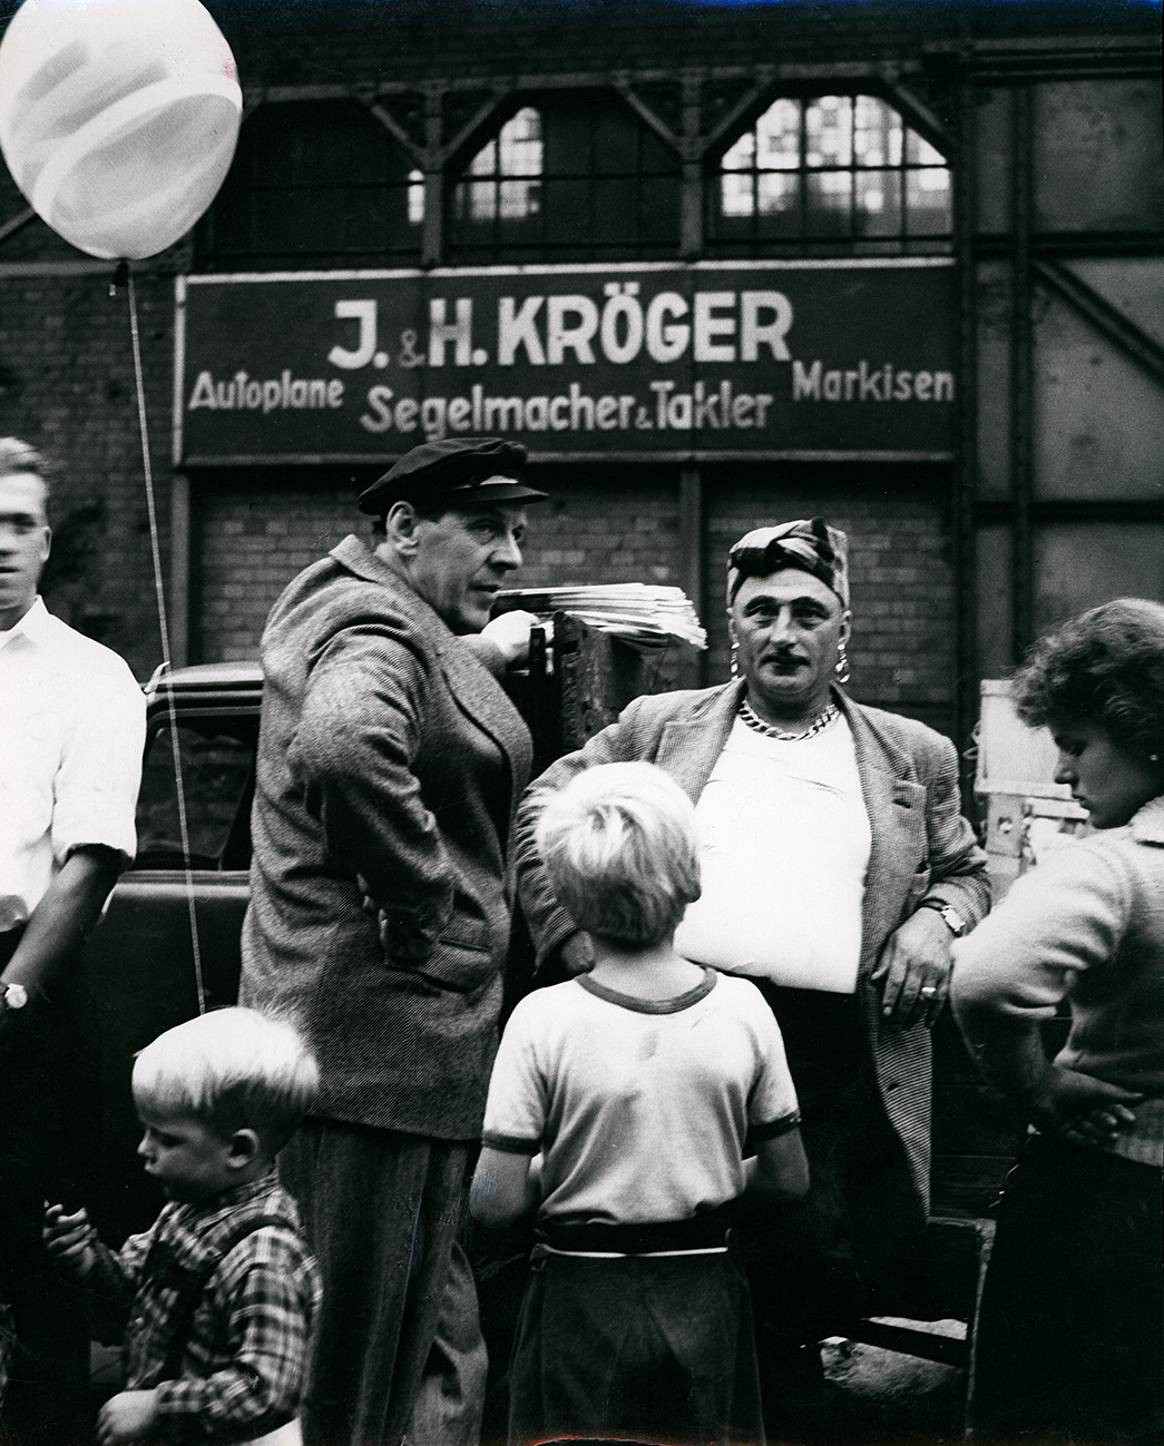 Fischmarkt, Hamburg, 1955. Bild: Charlotte March,
Deichtorhallen Hamburg/Sammlung Falckenberg